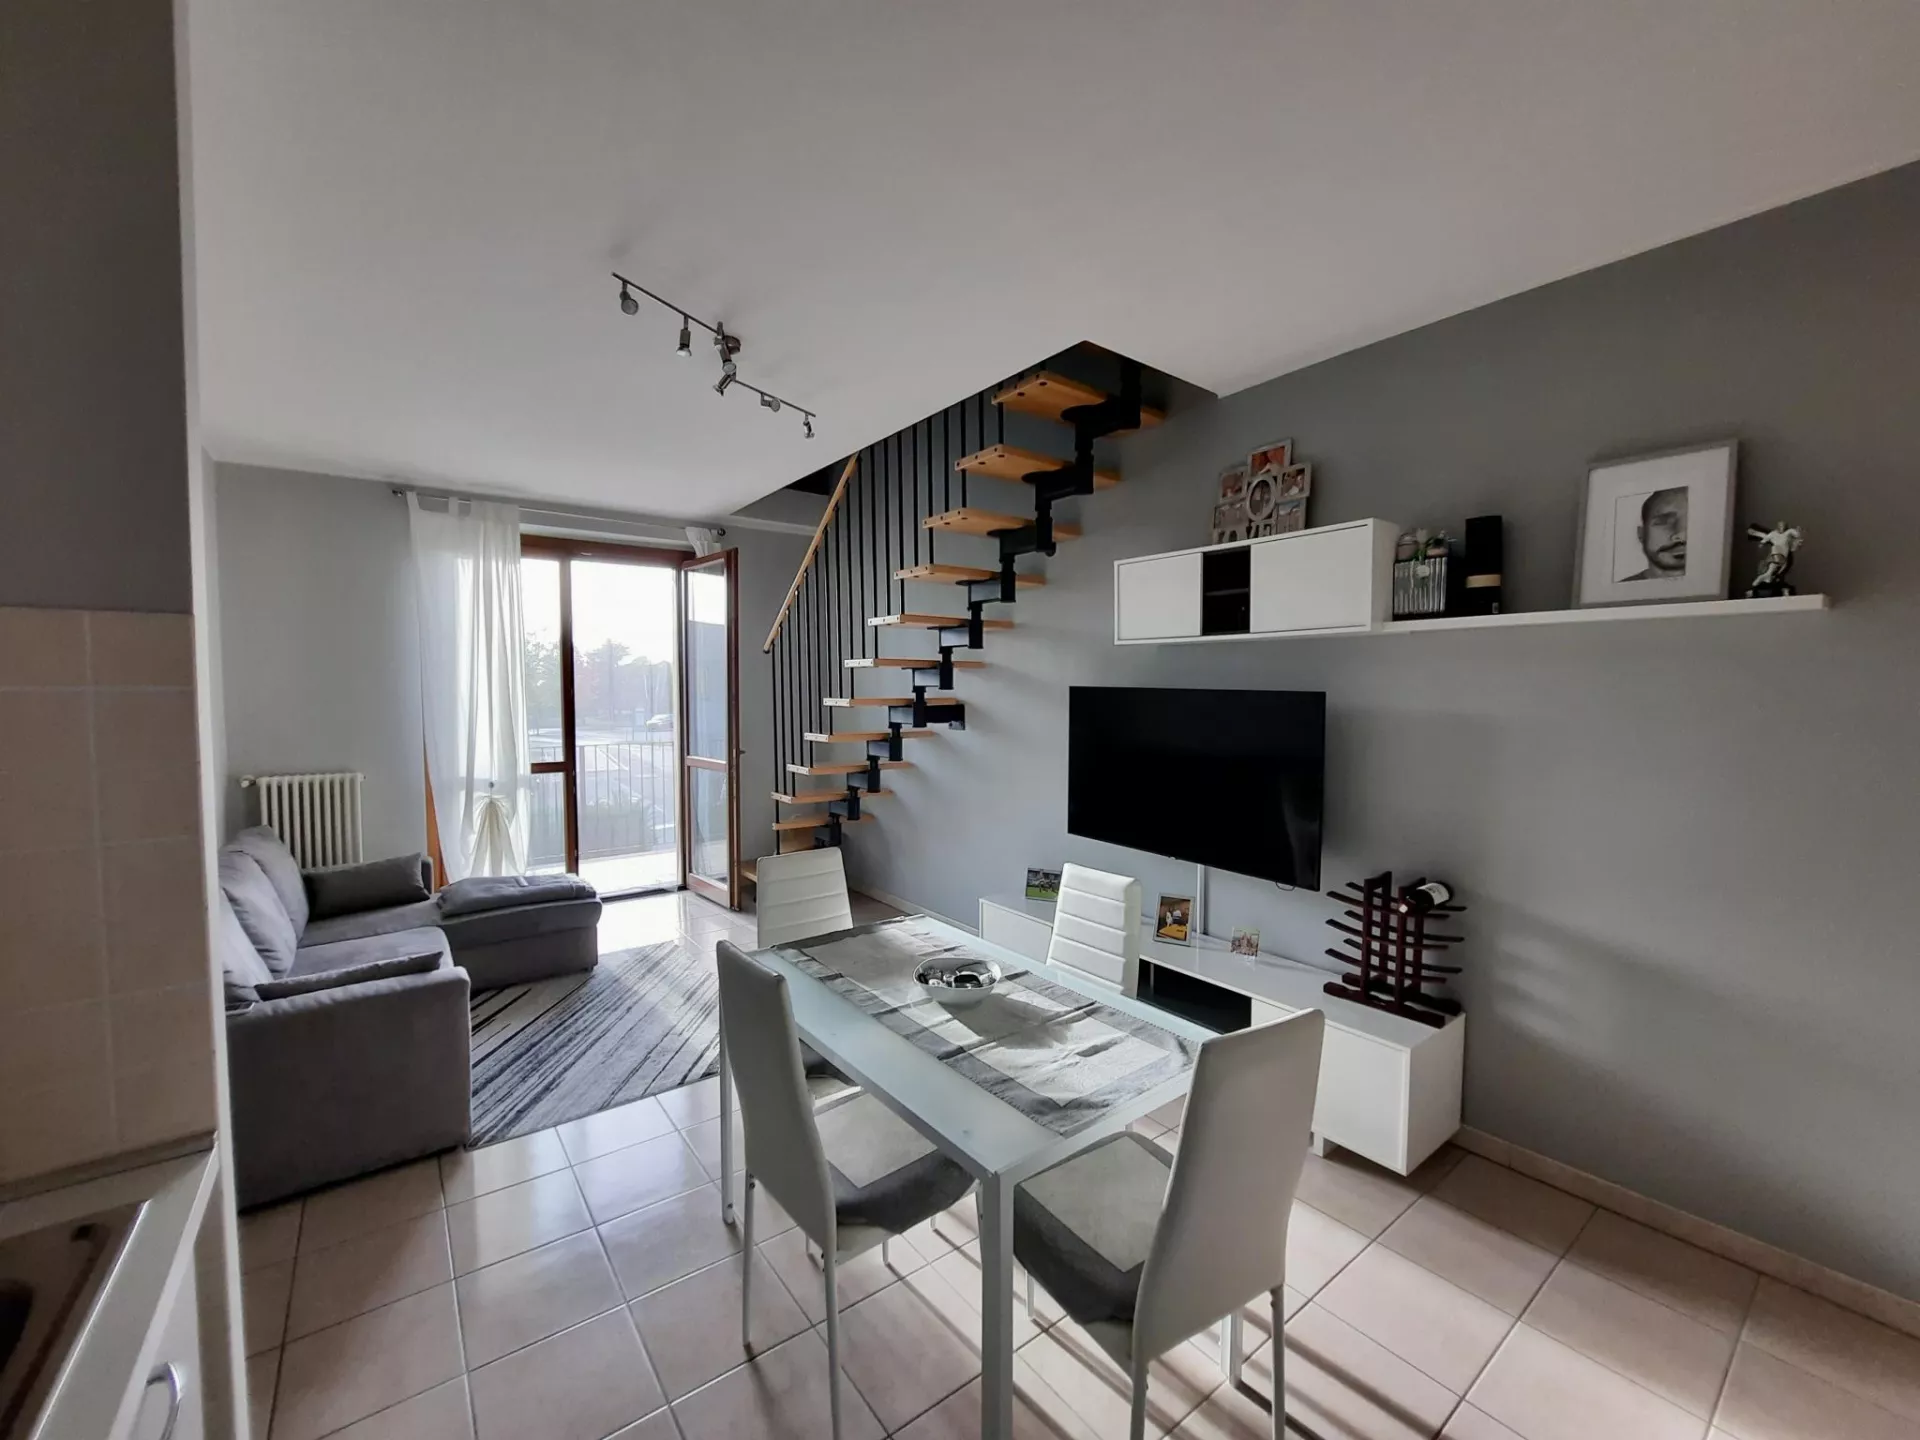 Immagine per Appartamento in vendita a Virle Piemonte via Podi 1